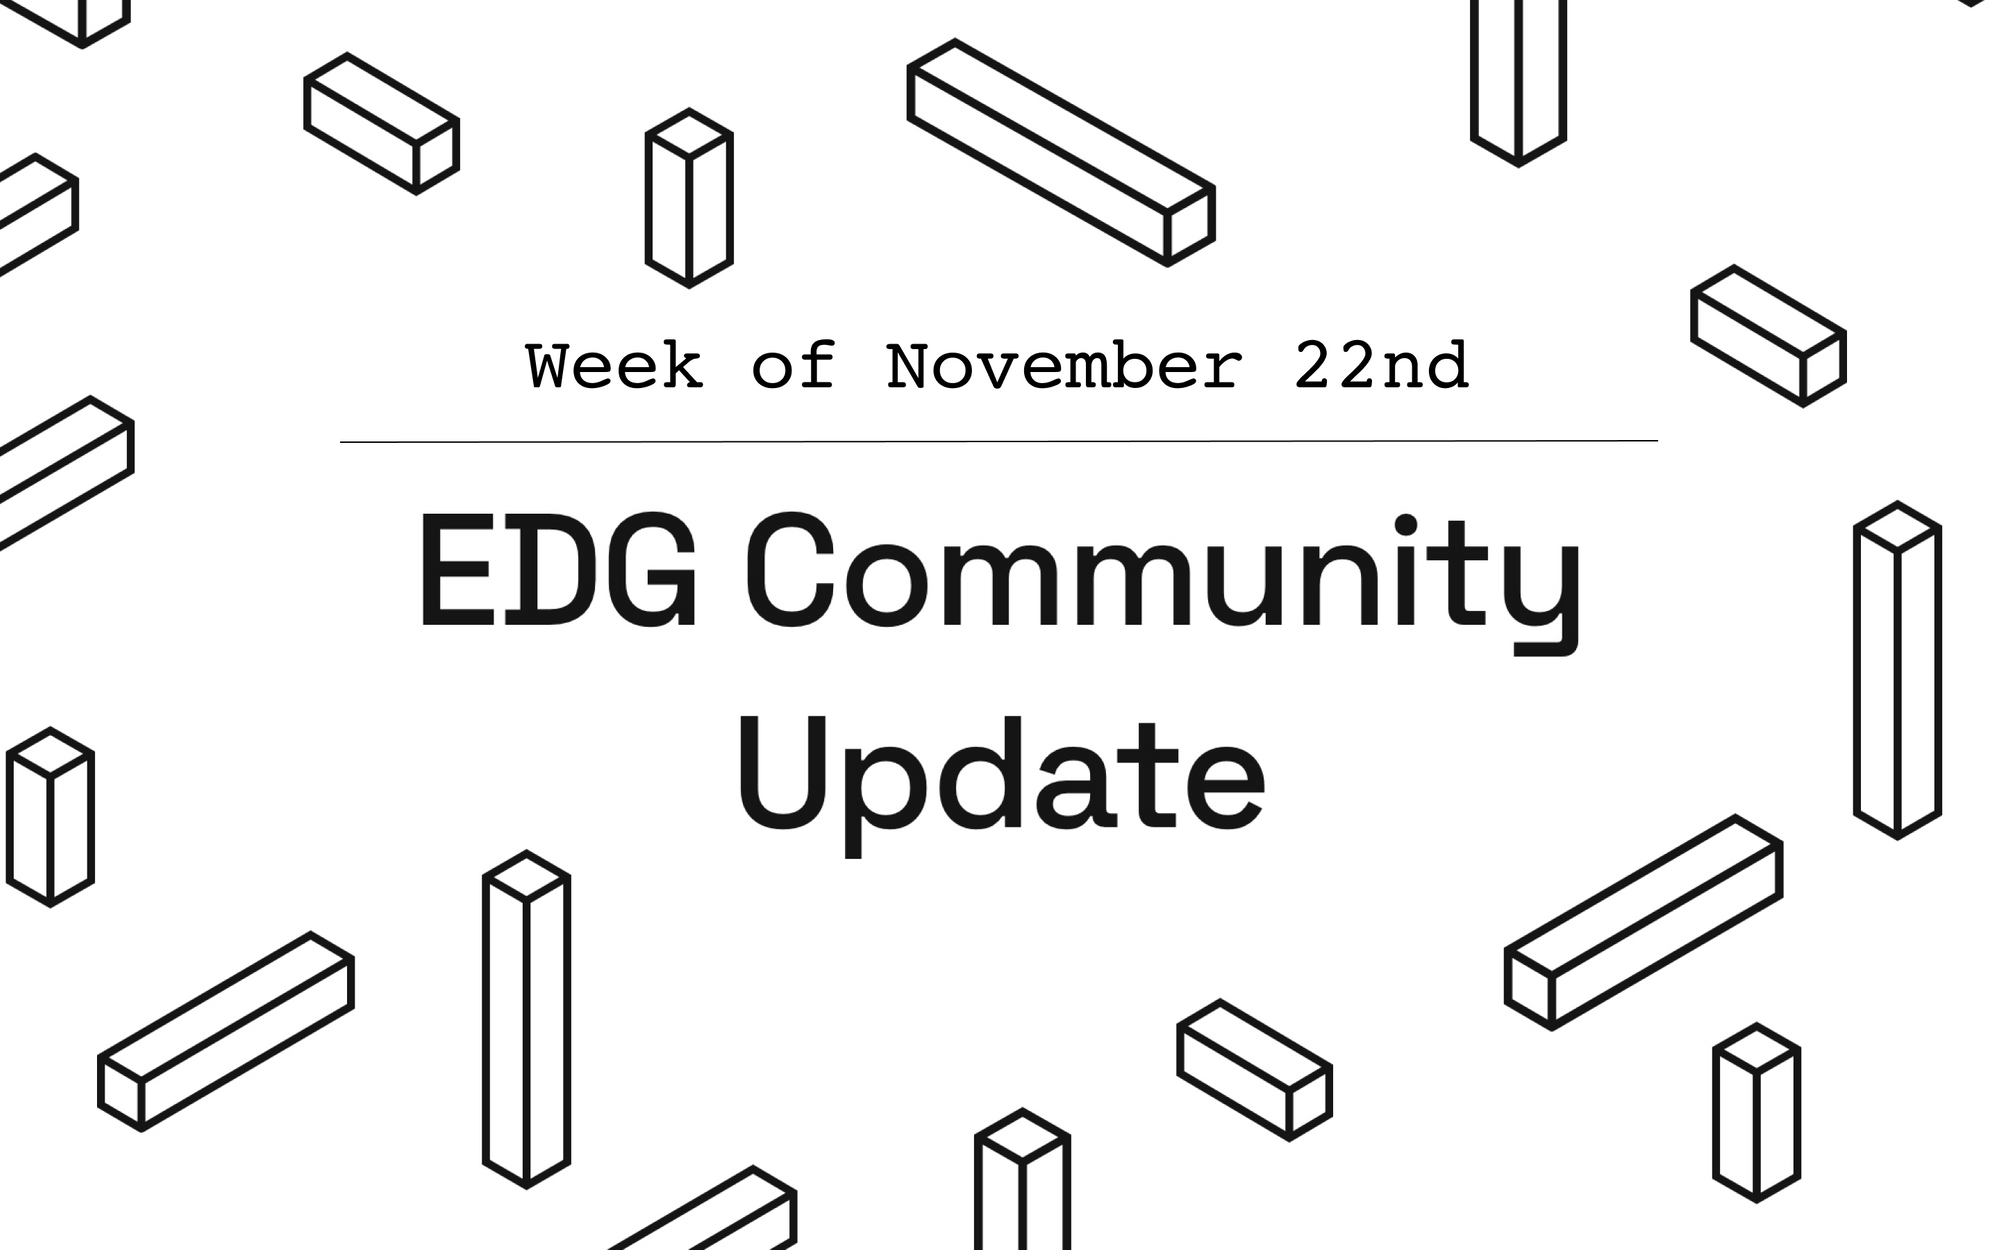 EDG Community Update: Week of November 22nd